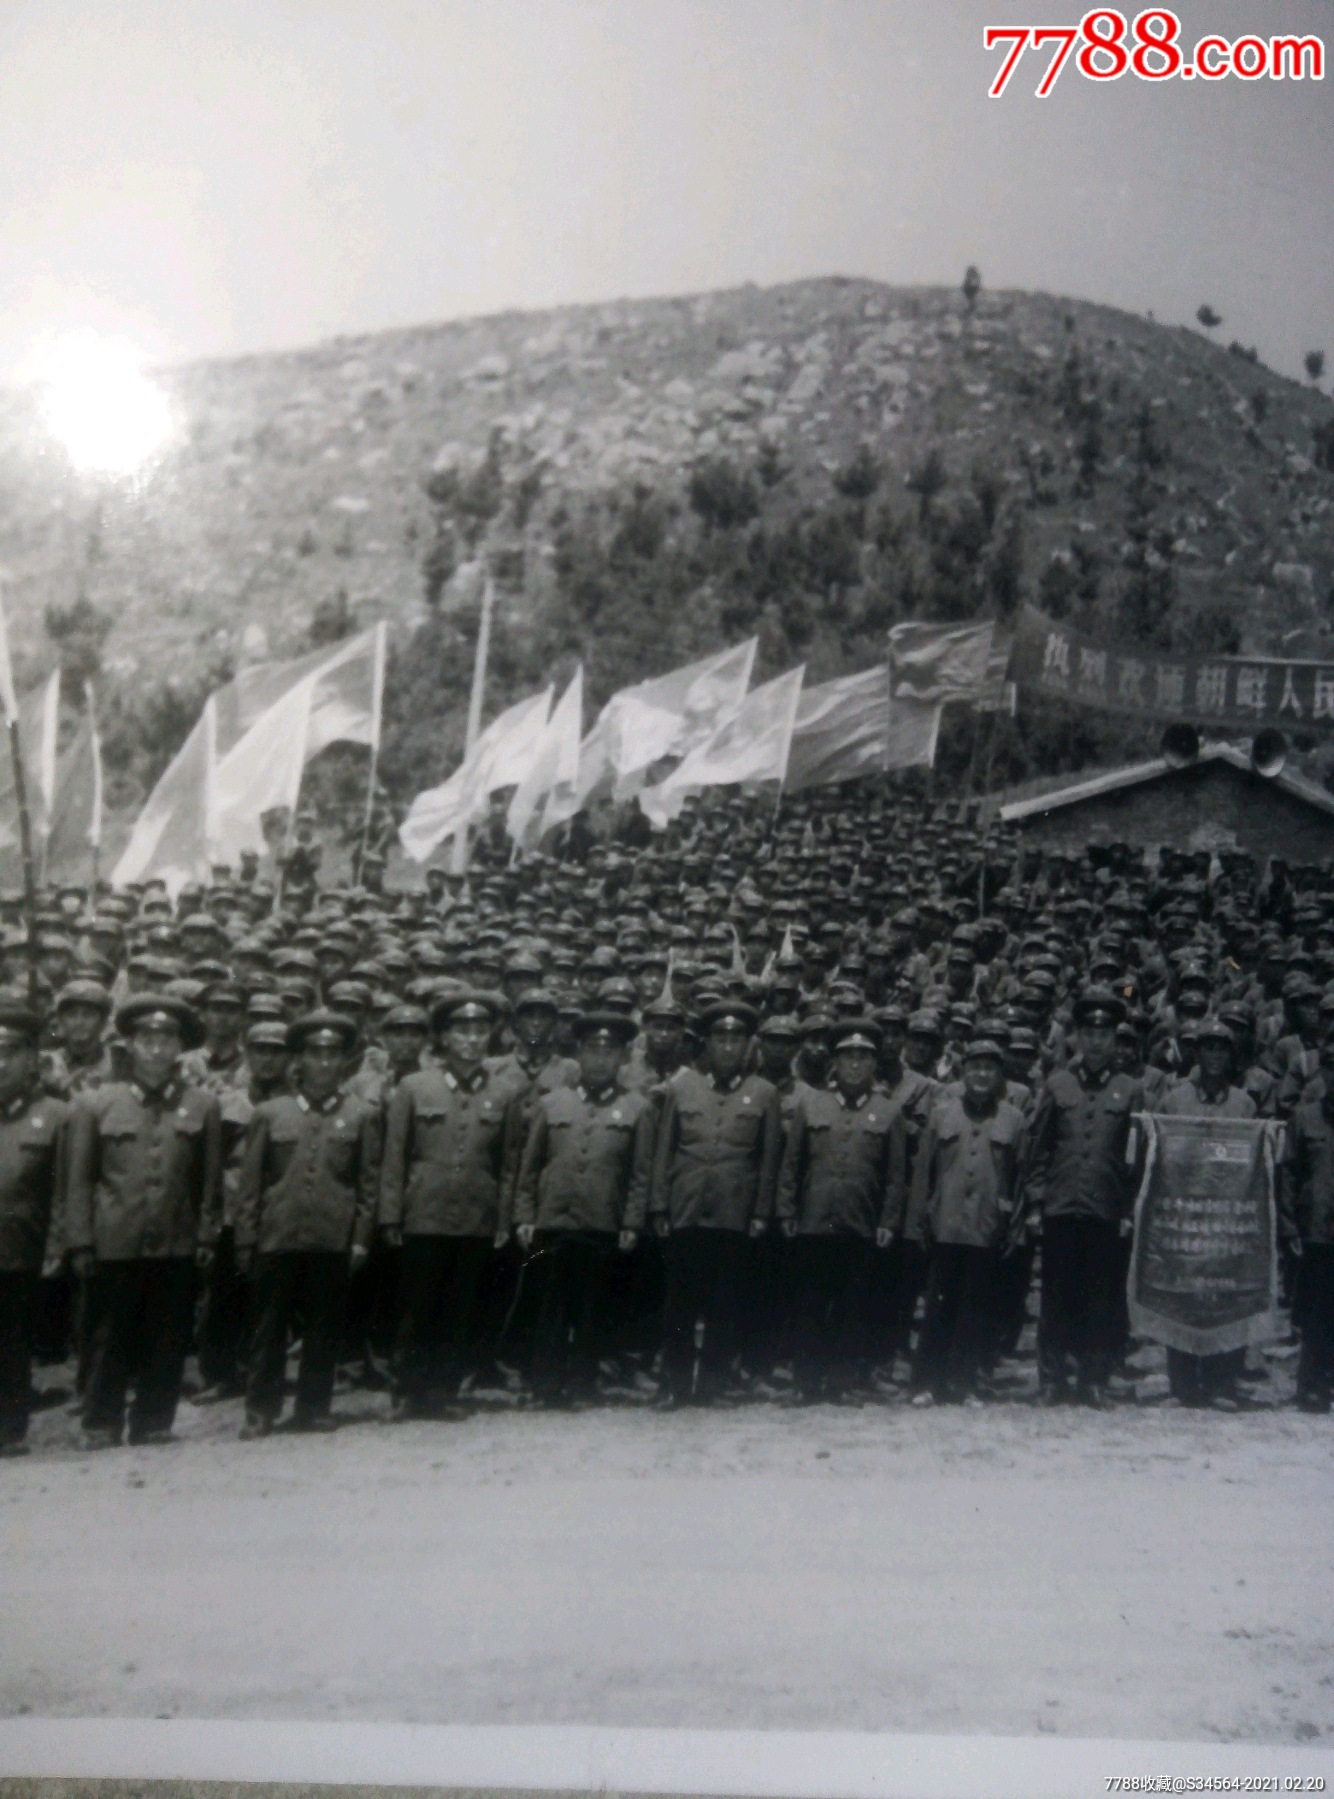 抗美援朝,朝鲜人民军代表团访问中国珍贵照片一张.